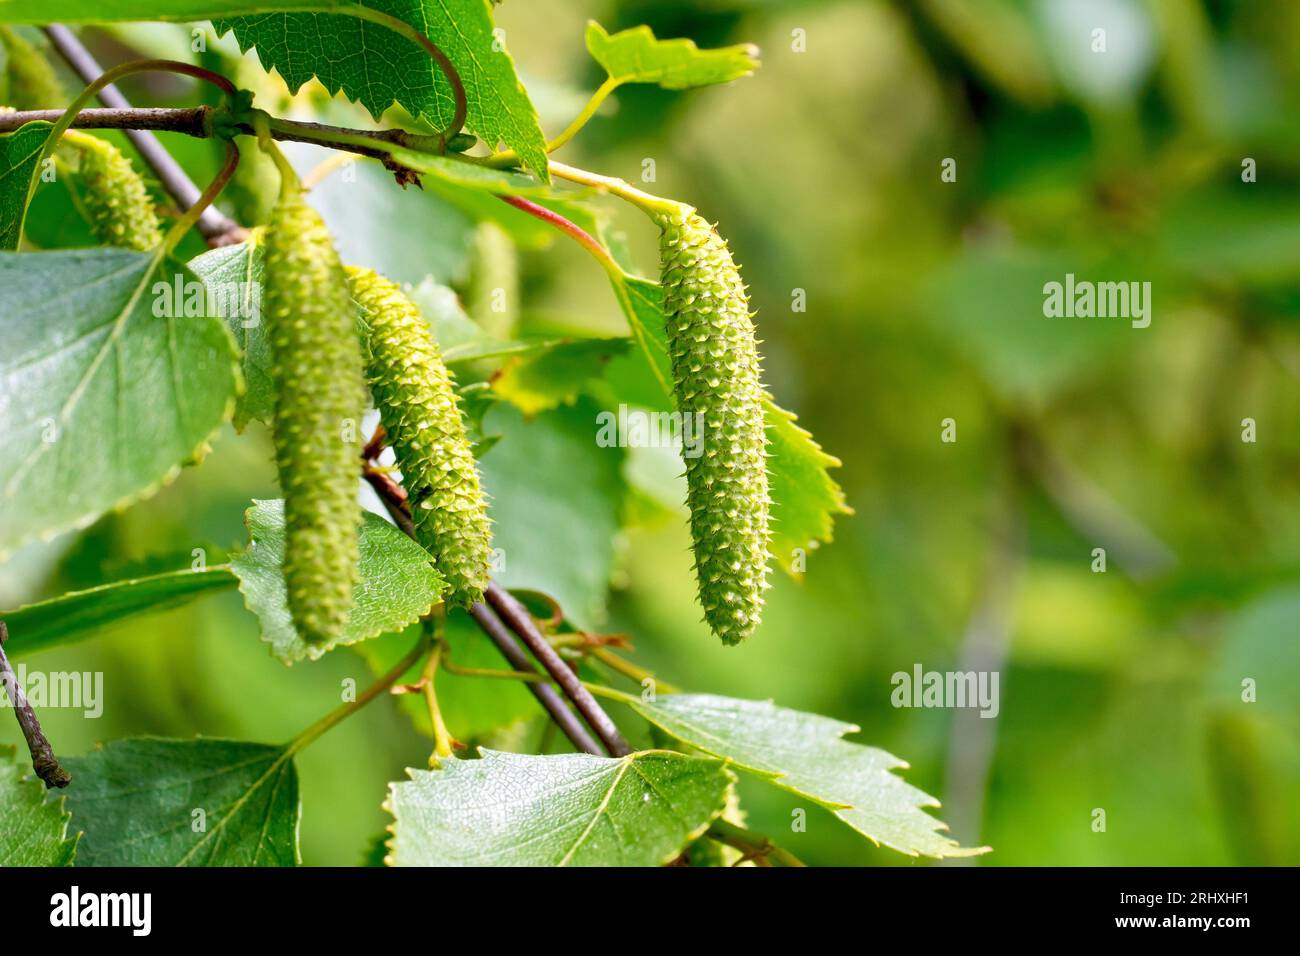 Silberbirke (betula pendula), Nahaufnahme der sich entwickelnden Samenkapseln oder Katzenkörner, die im späten Frühjahr zwischen den Blättern des Baumes hängen. Stockfoto